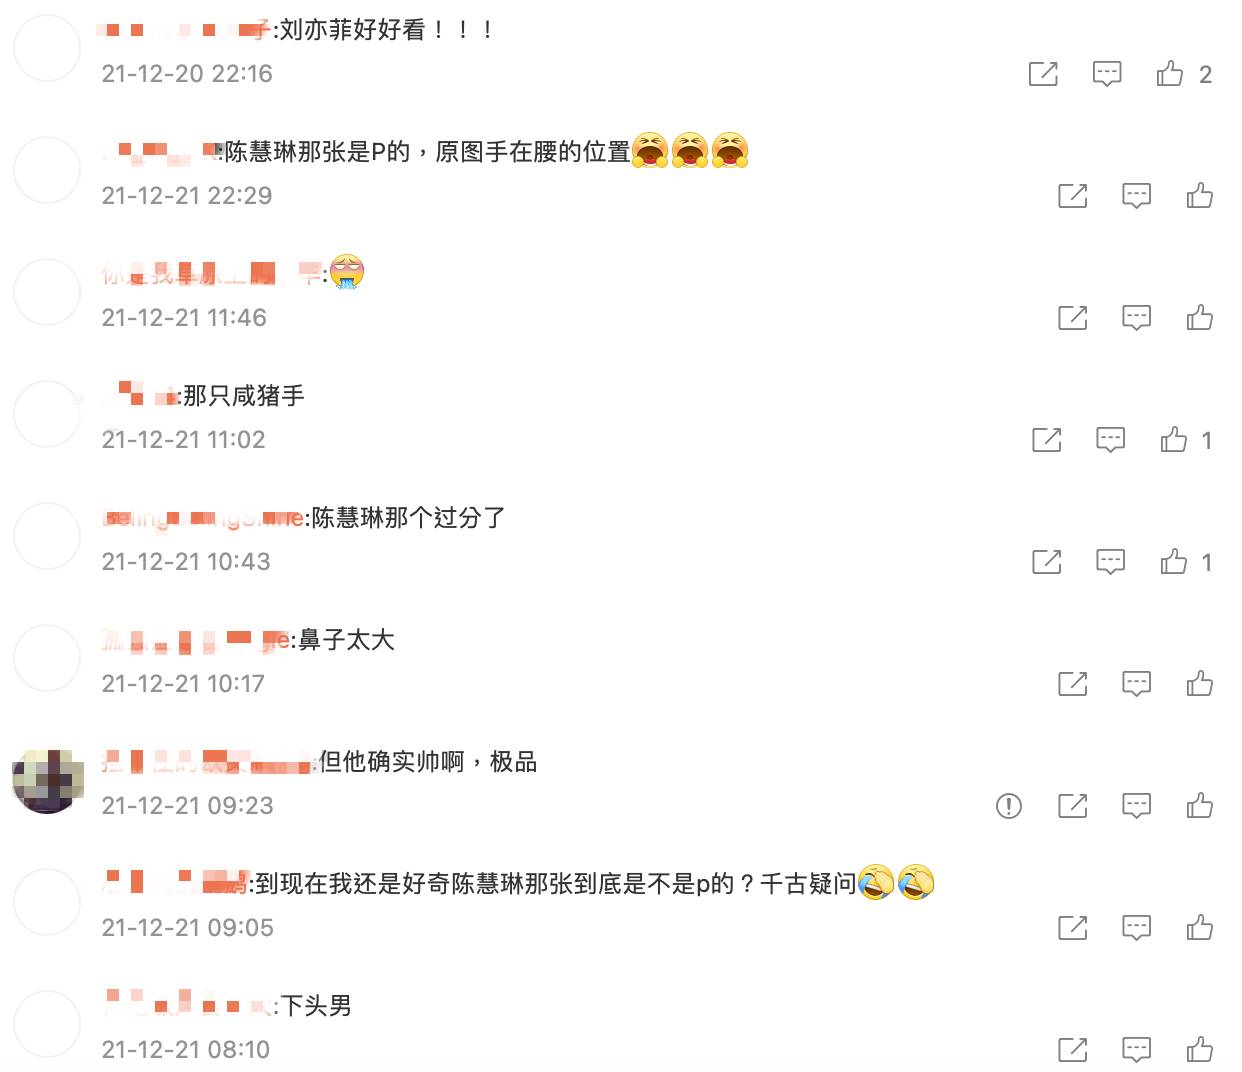 微博網友對王力宏襲胸事件討論